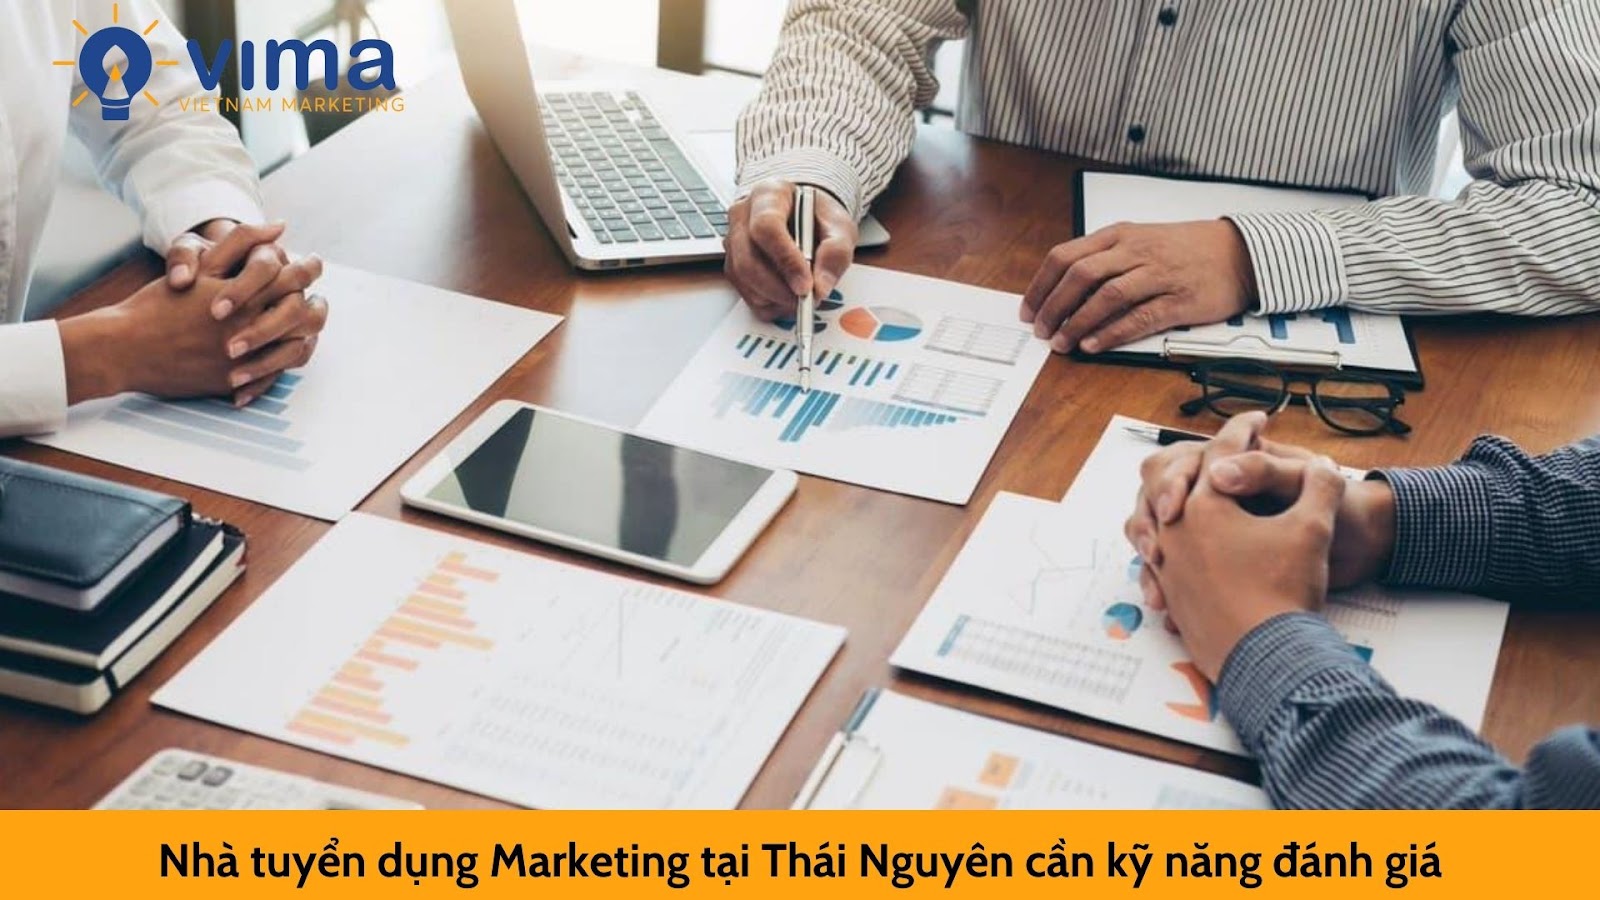 Những kỹ năng mà nhà tuyển dụng Marketing tại Thái Nguyên cần có